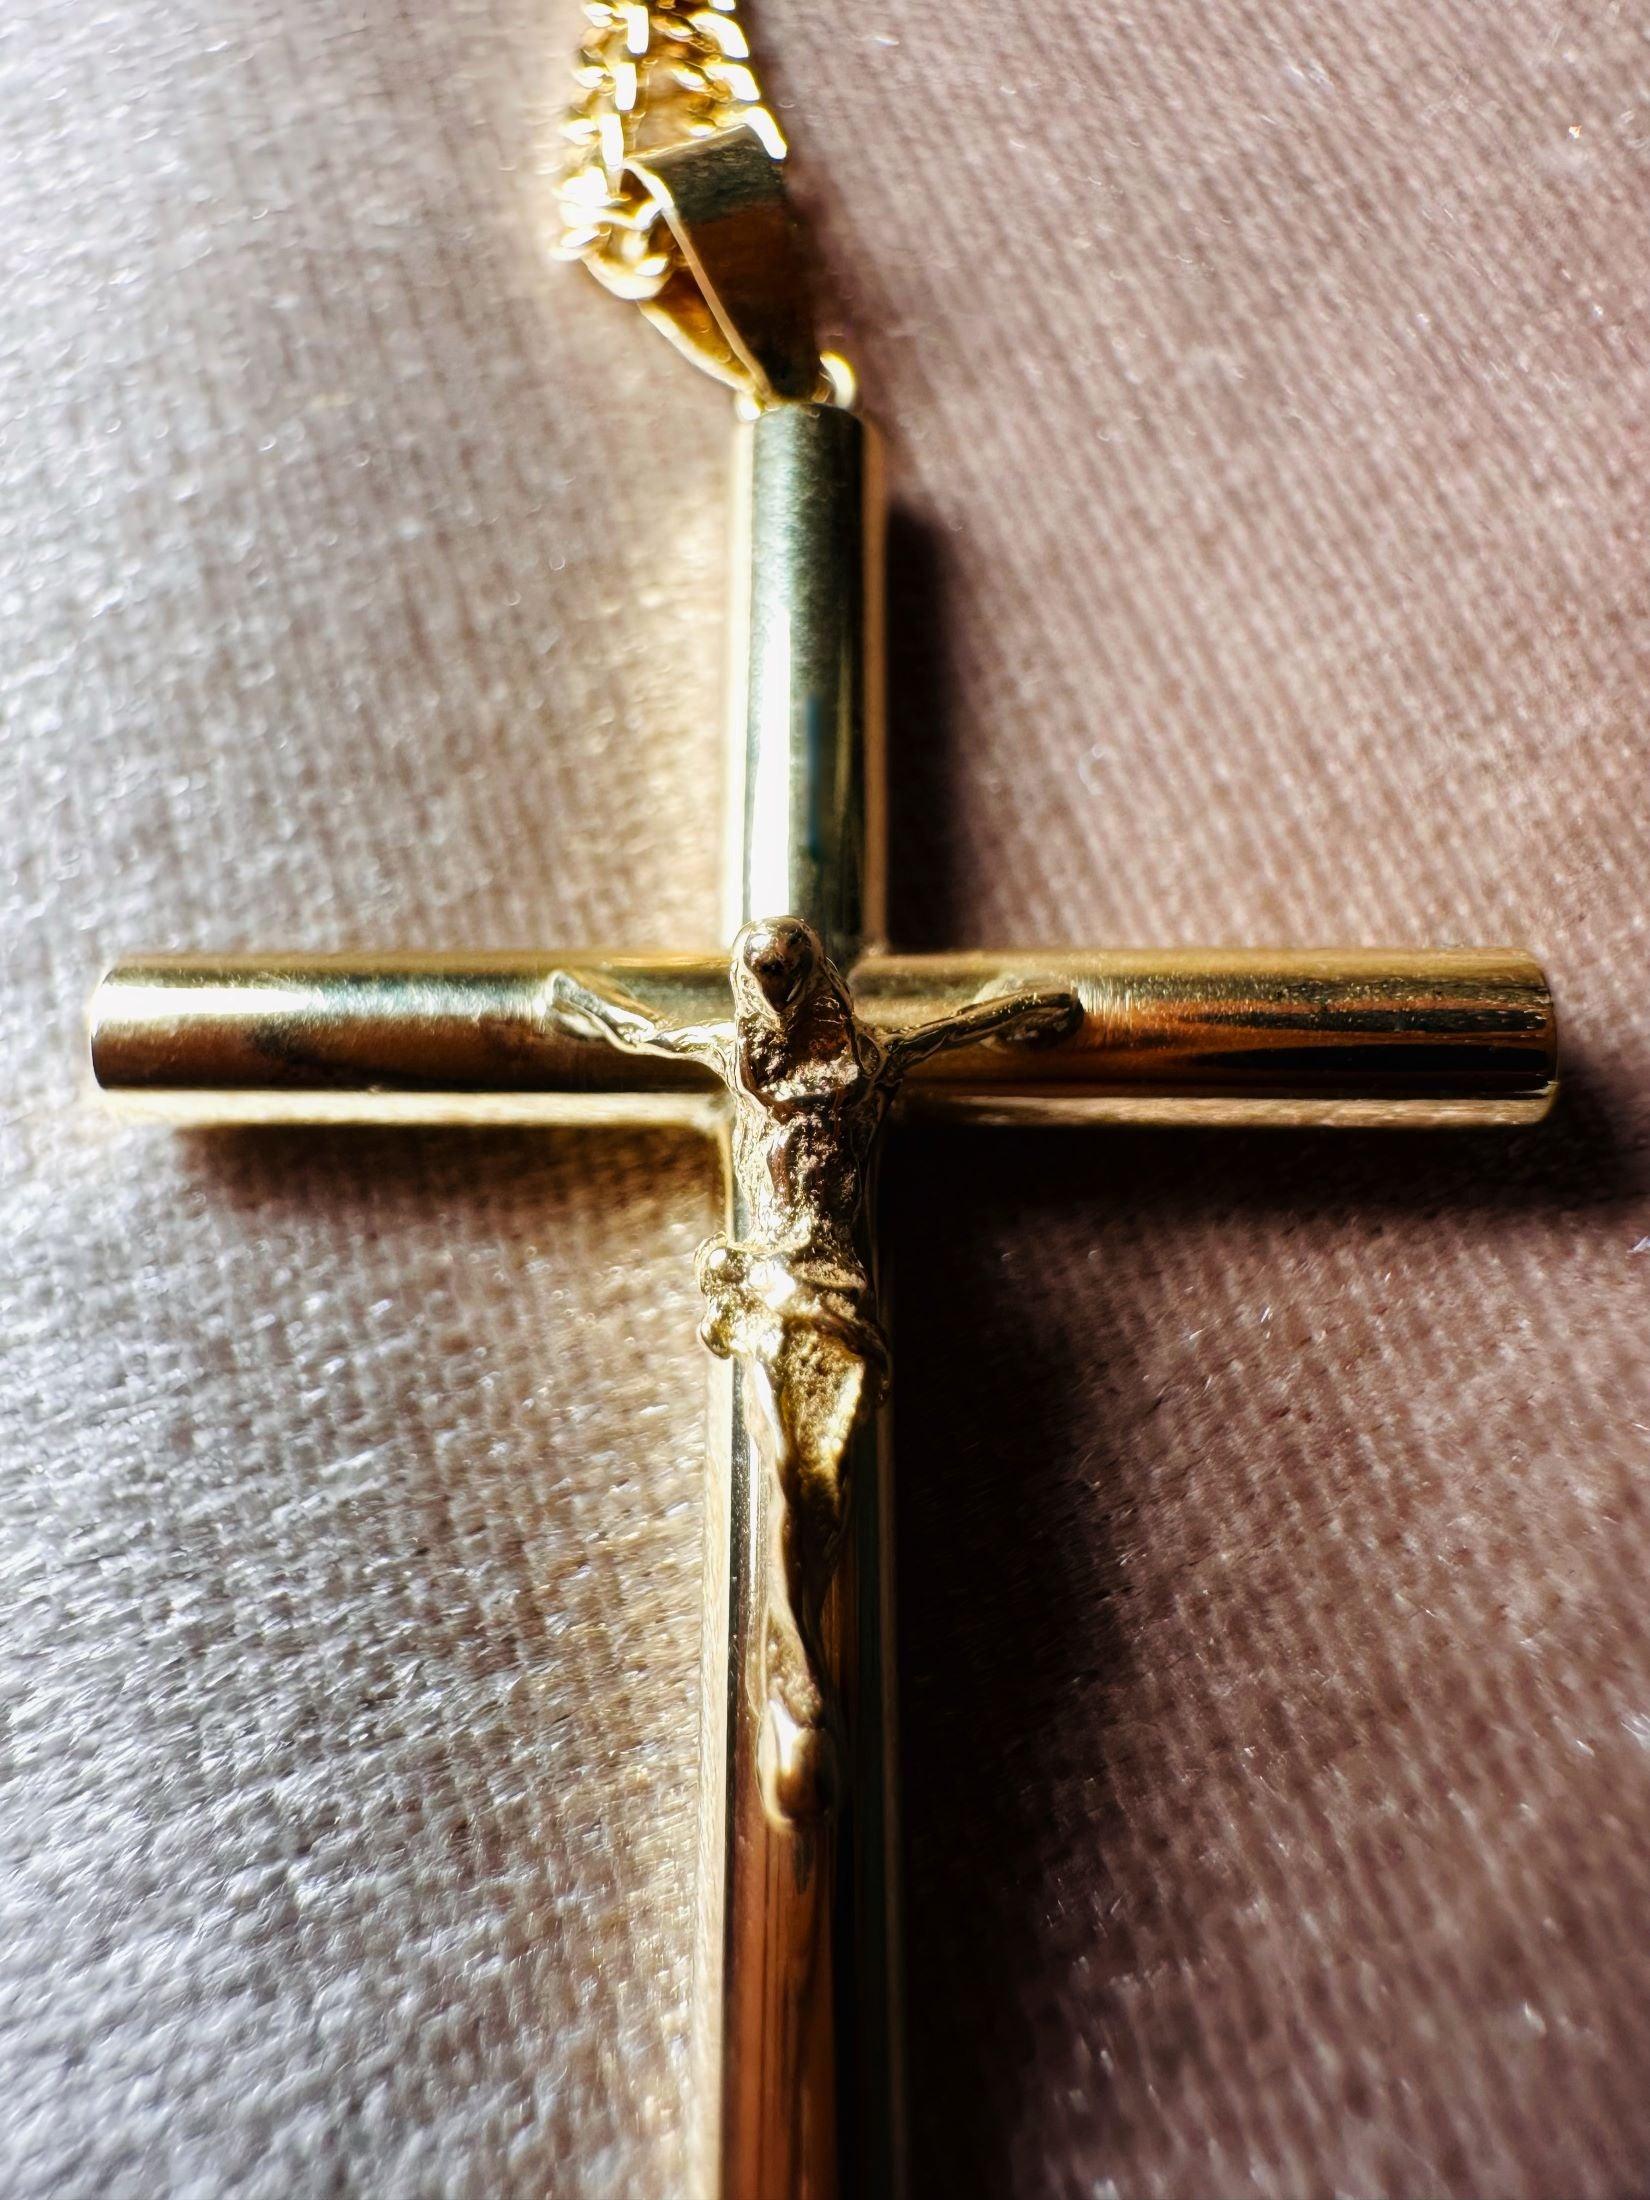 Croix "Amen" en or jaune 18 carats, finition polie brillante - Maison Gabriel